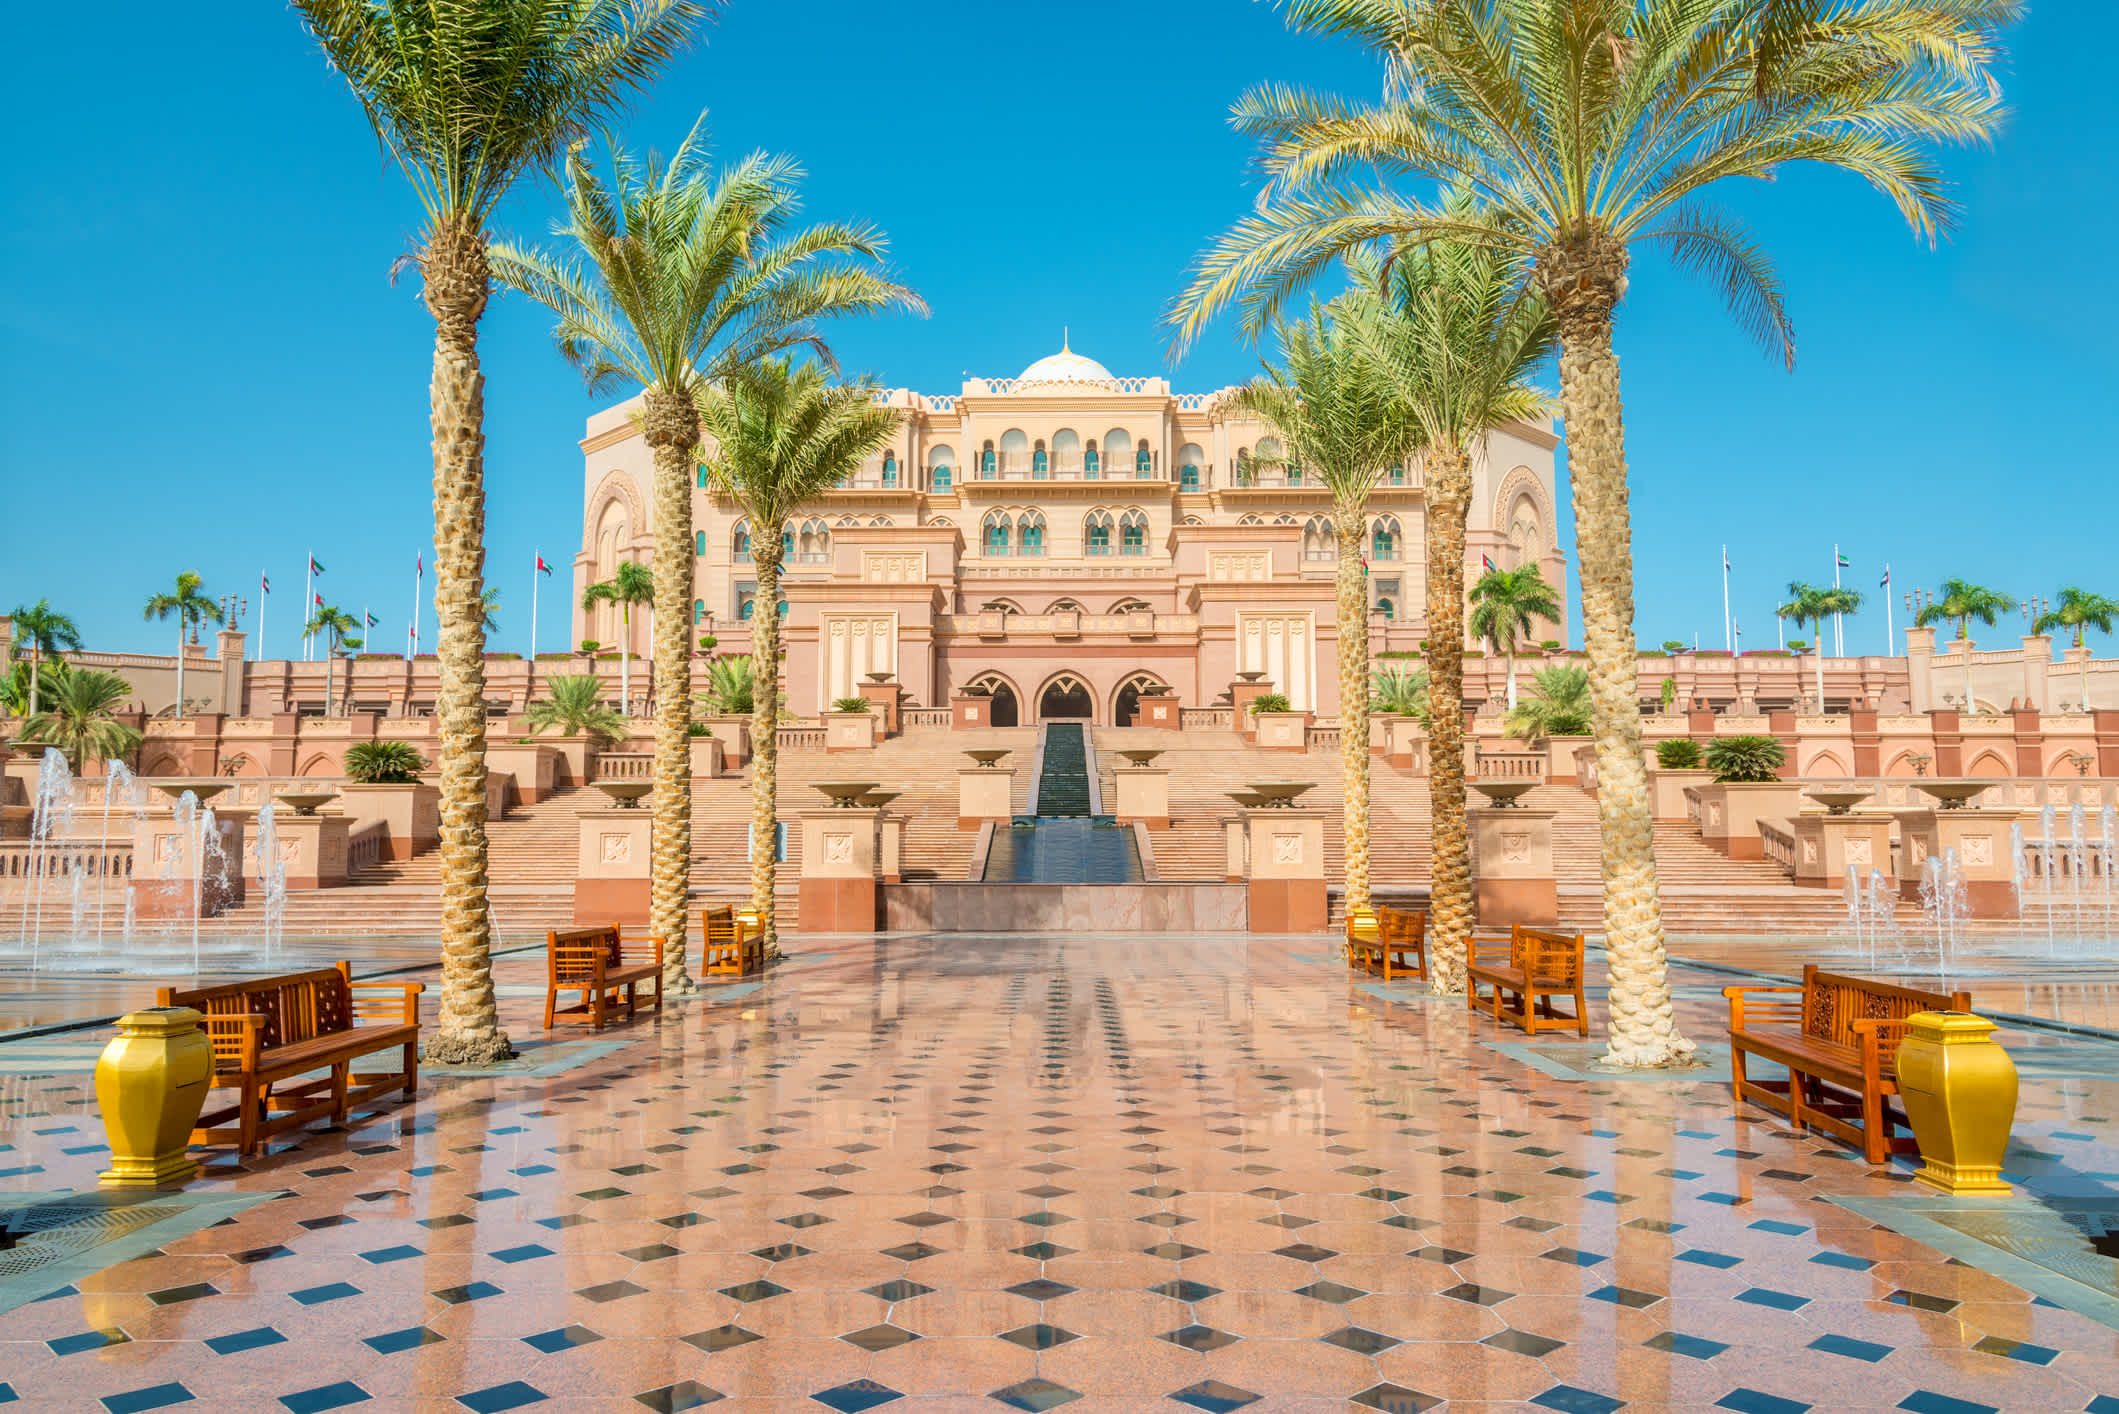 Vorplatz eines prunkvollen Gebäudes in arabischer Architektur, mit Palmen gesäumt.